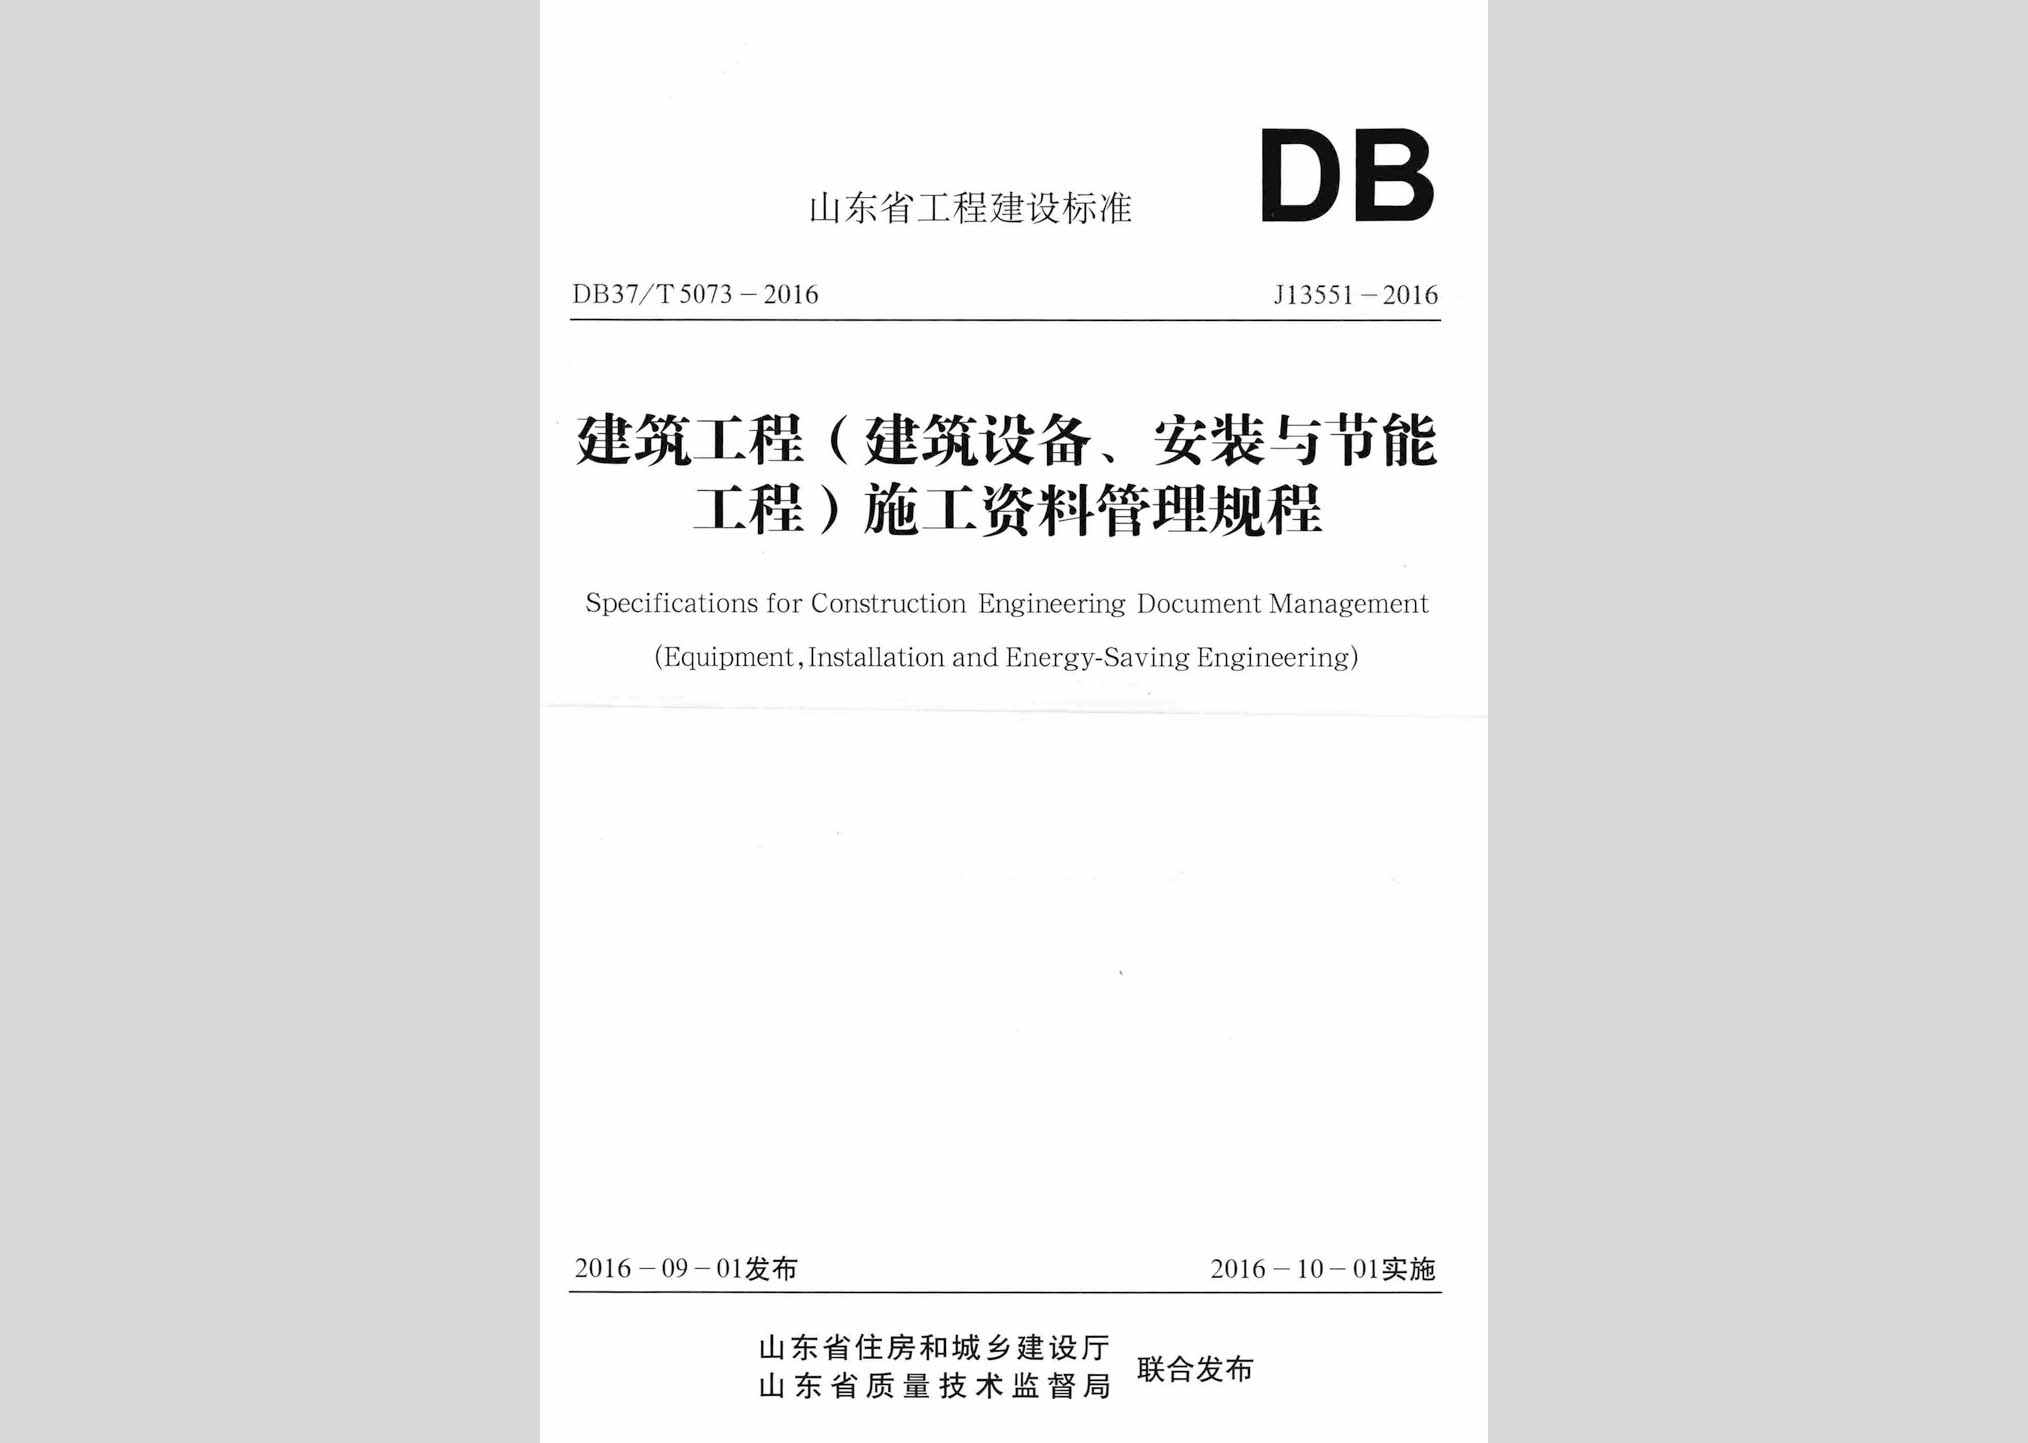 DB37/T5073-2016：建筑工程(建筑设备、安装与节能工程)施工资料管理规程